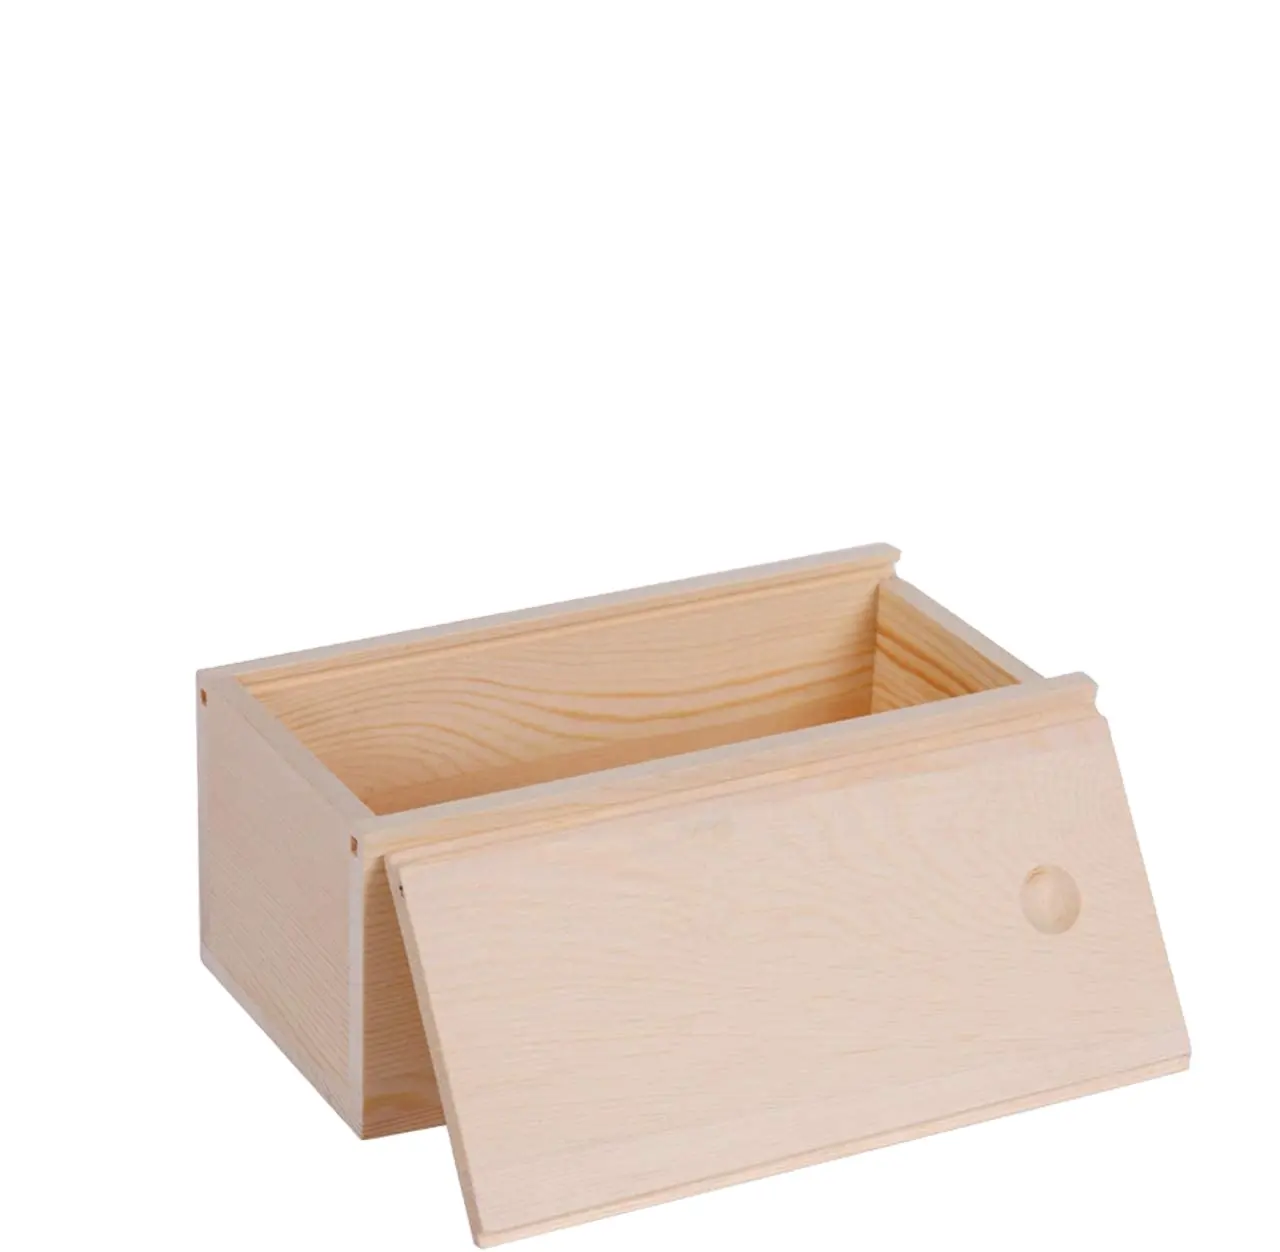 미완성 나무 저장 상자 슬라이드 뚜껑 빈 자연 나무 상자 케이스 컨테이너 웨딩 DIY 공예 취미 홈 스토리지